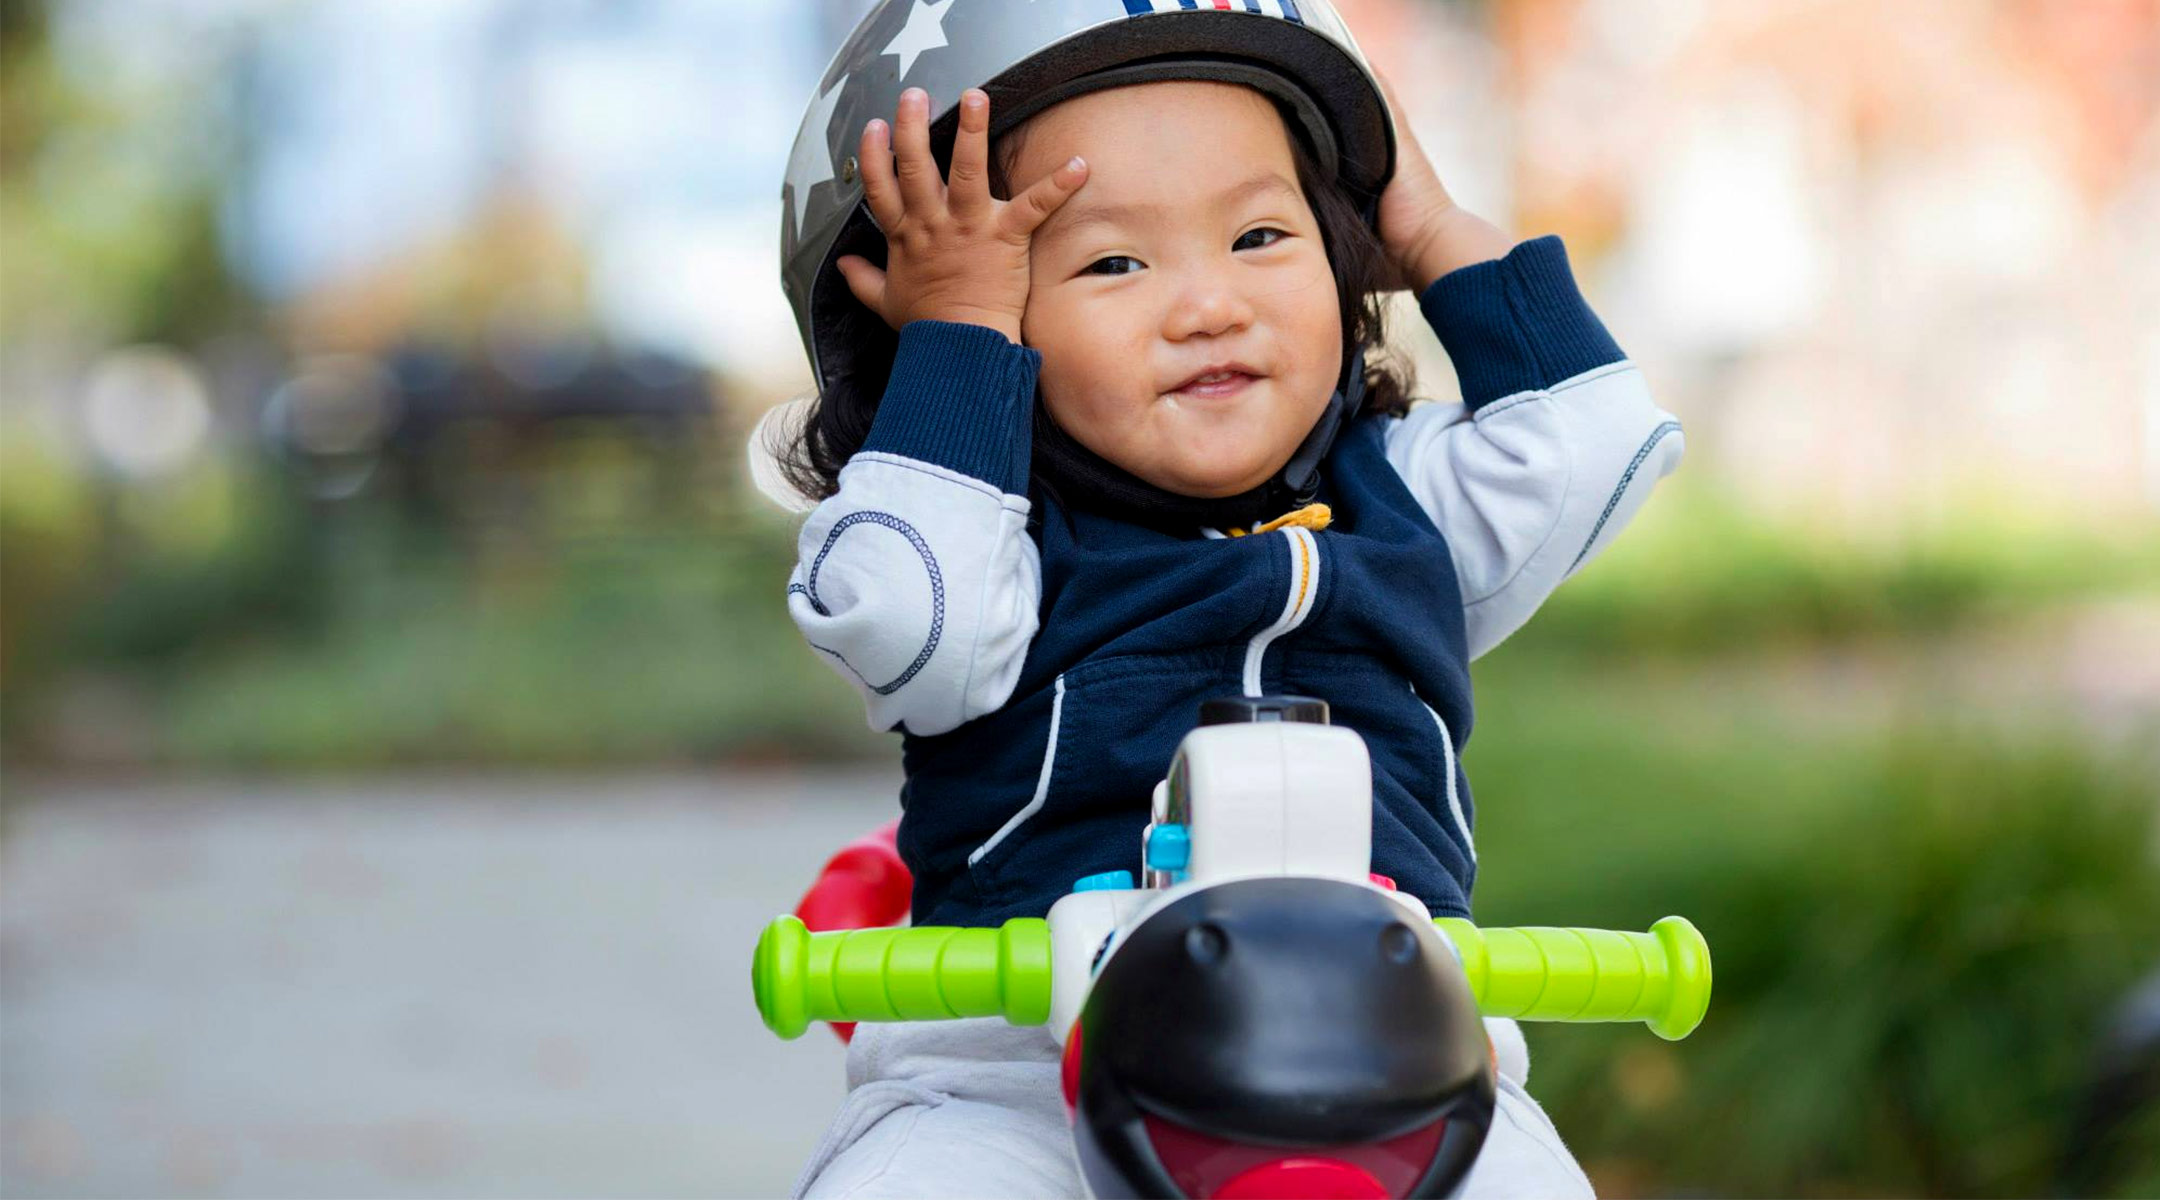 toddler holding helmet on play bike